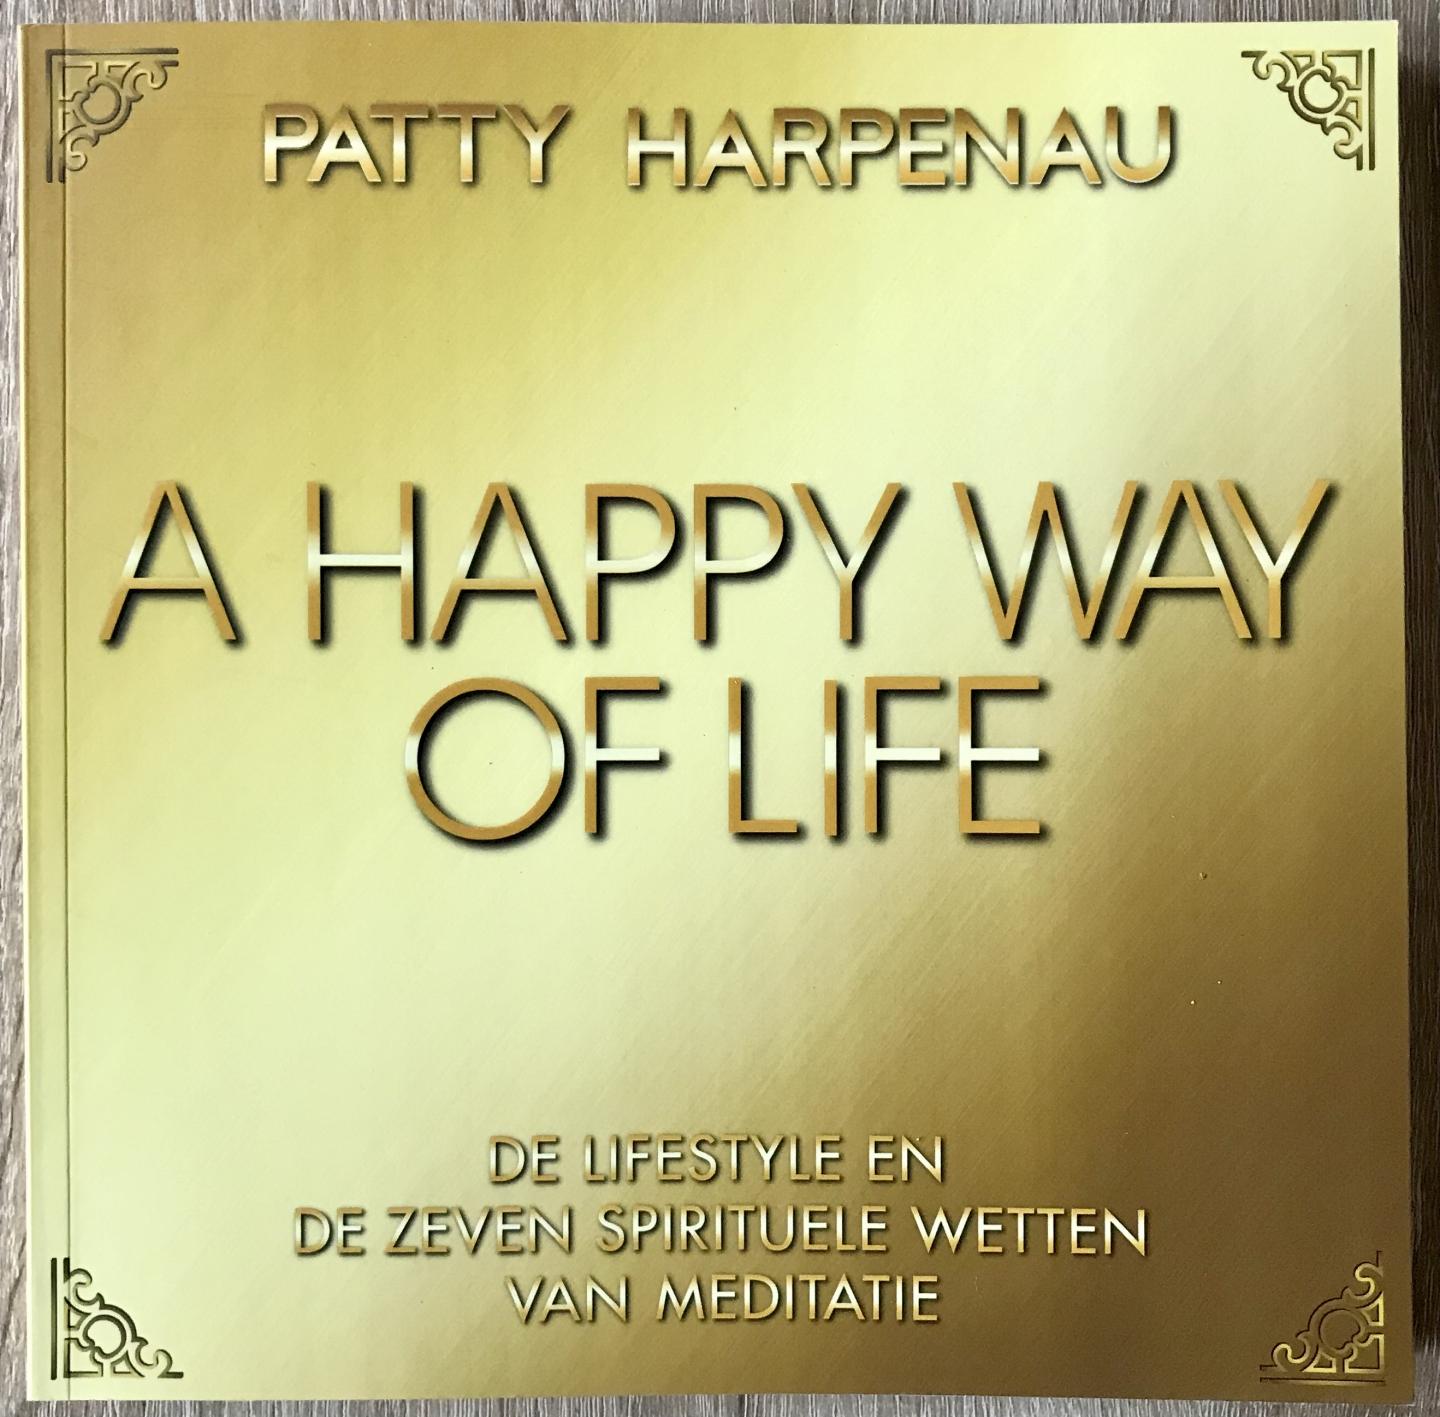 Harpenau, Patty - A happy way of life / De lifestyle en zeven wetten van meditatie